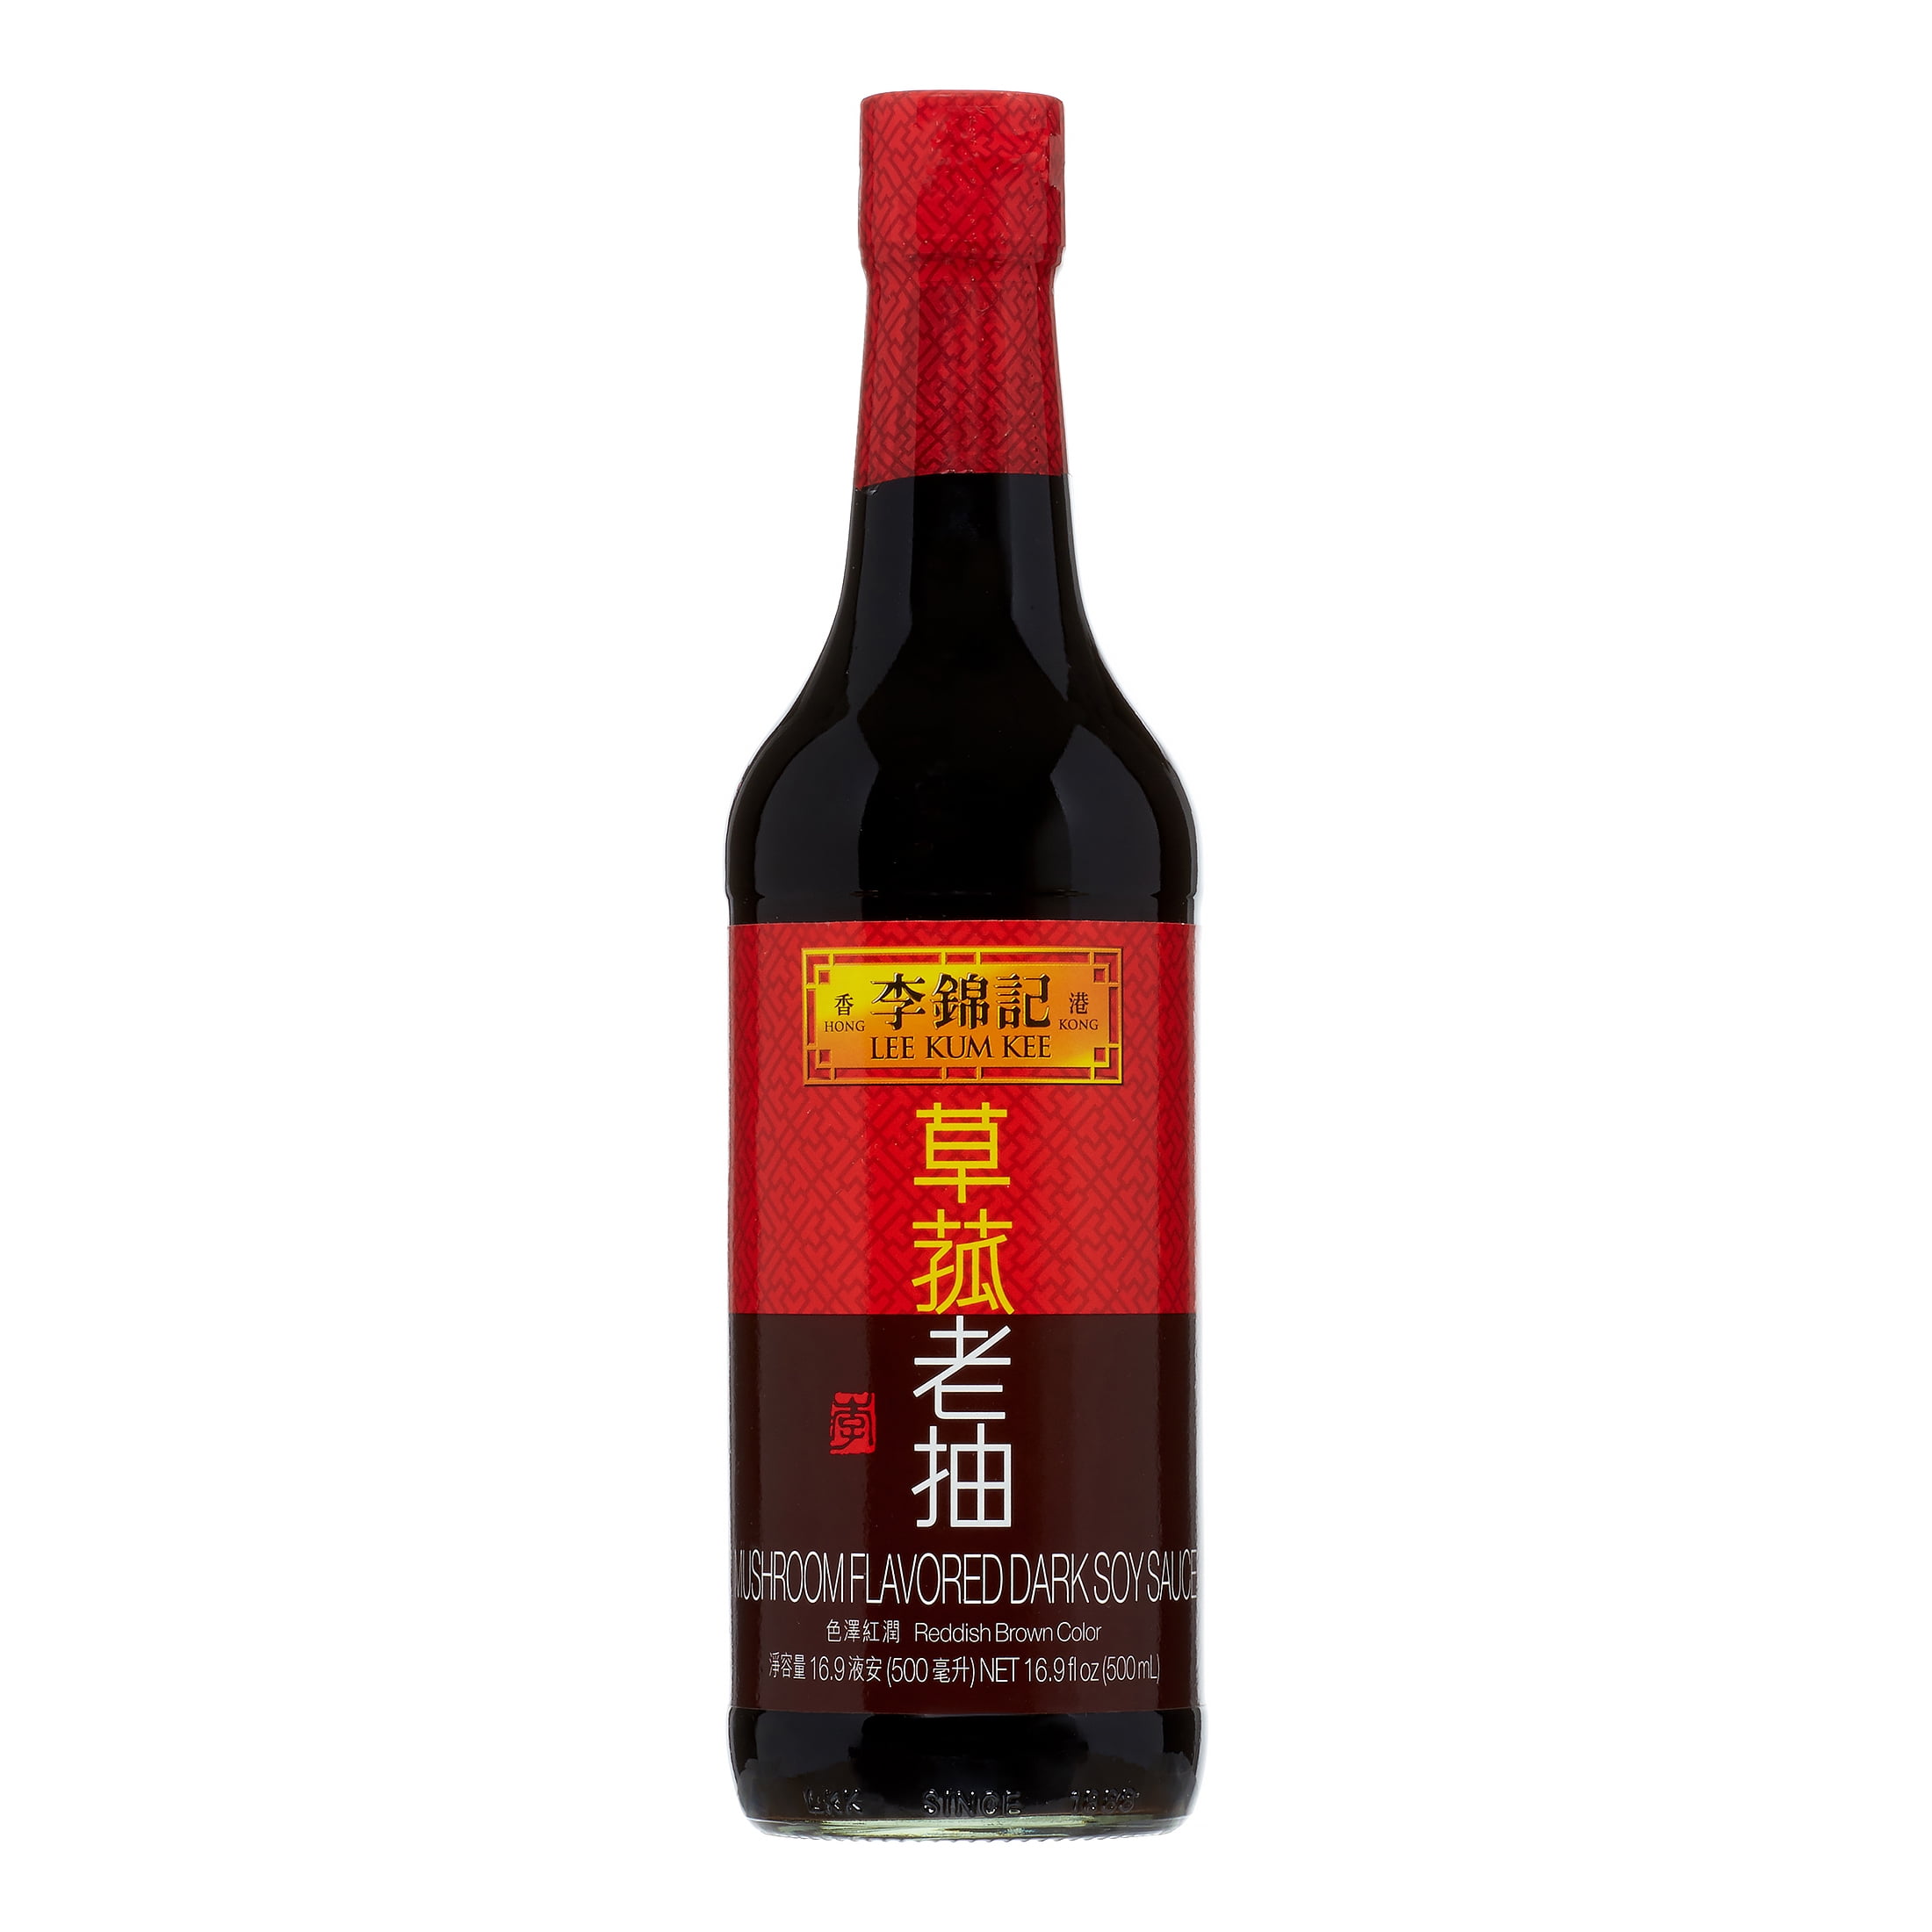 2 Pack) Lee Kum Kee Mushroom Flavored Dark Soy Sauce, 16.9 fl oz - Walmart....